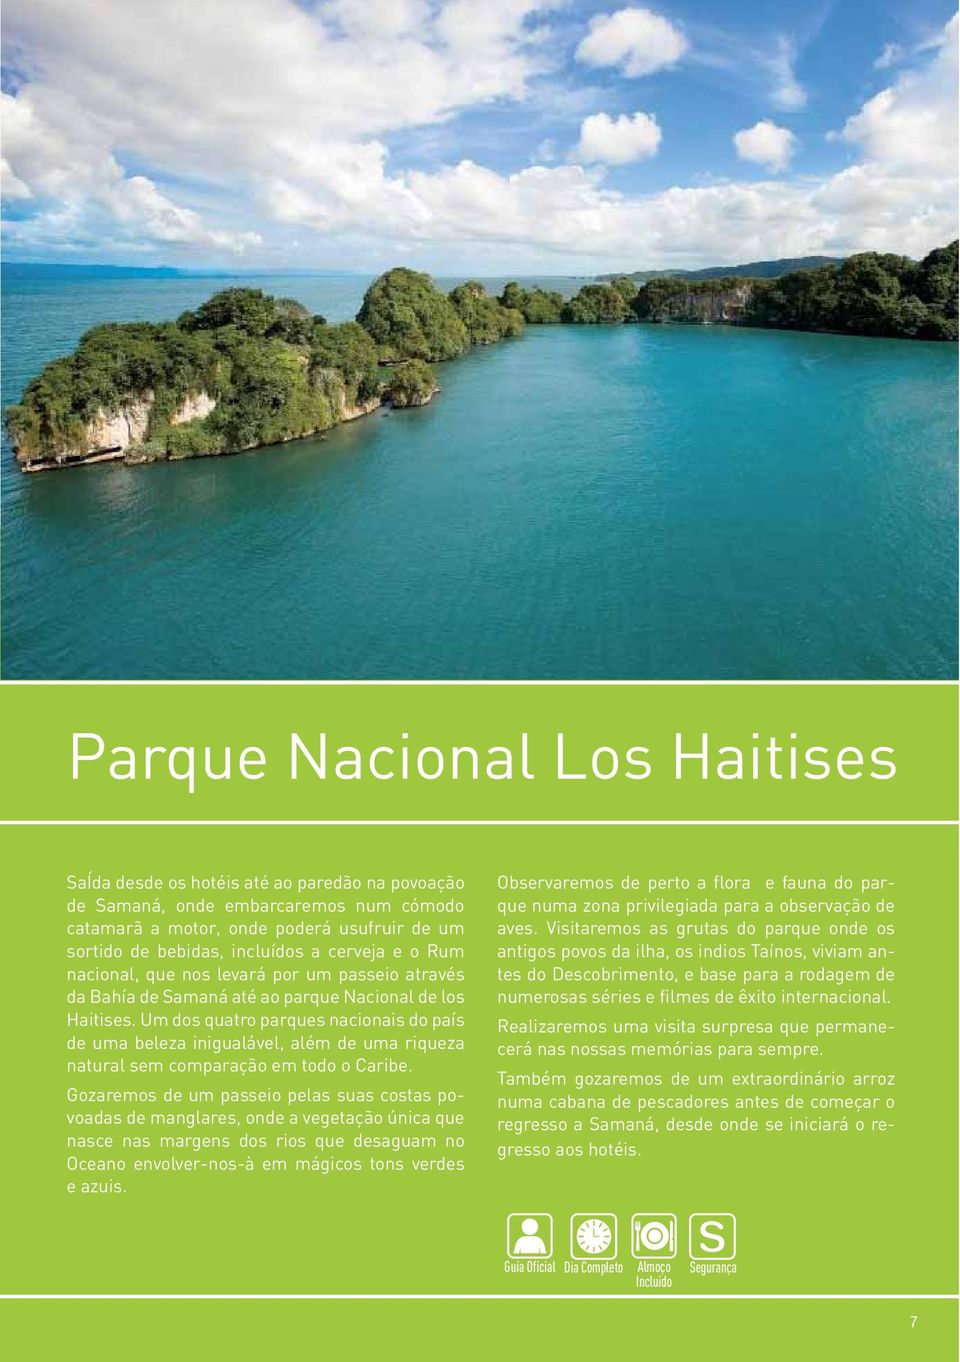 Um dos quatro parques nacionais do país de uma beleza inigualável, além de uma riqueza natural sem comparação em todo o Caribe.